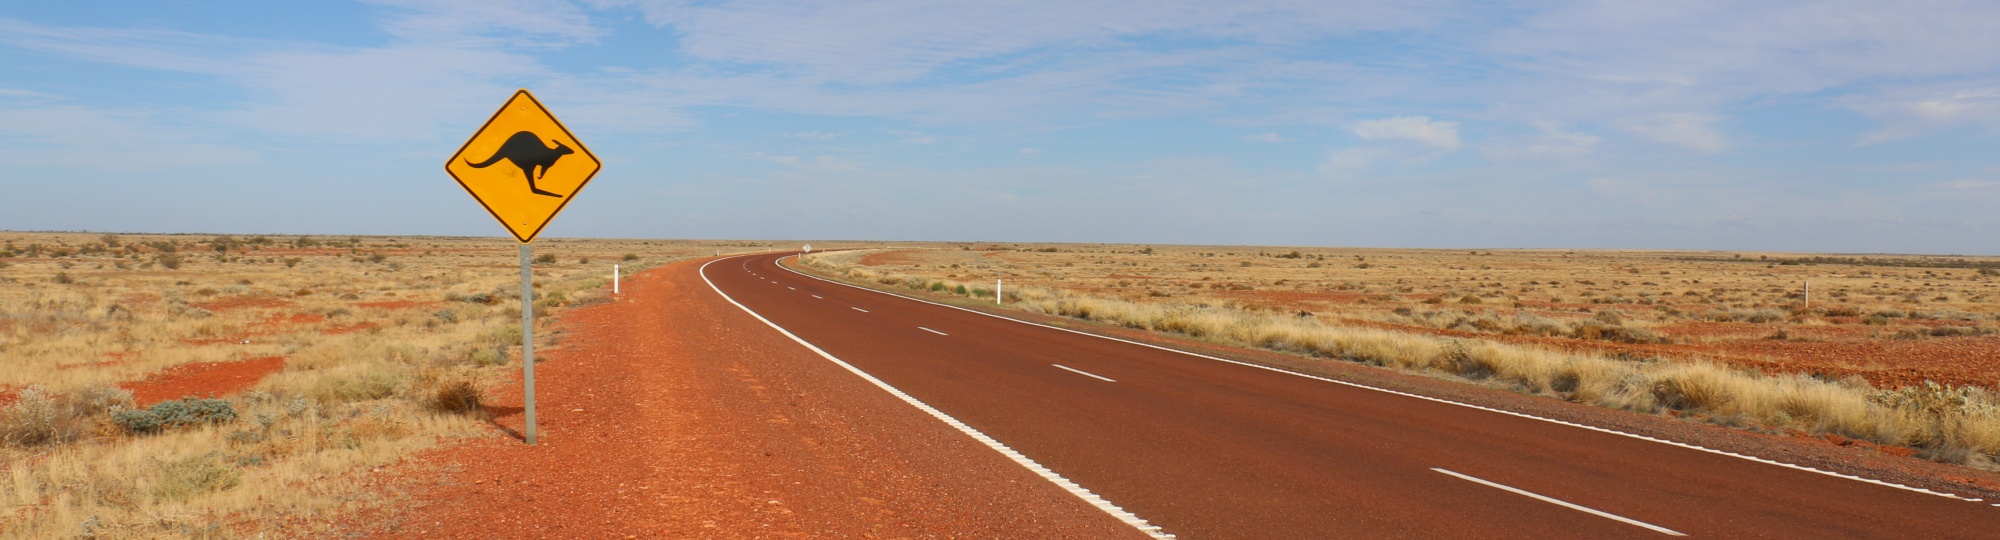 Australien – das Land der endlosen Weite?-